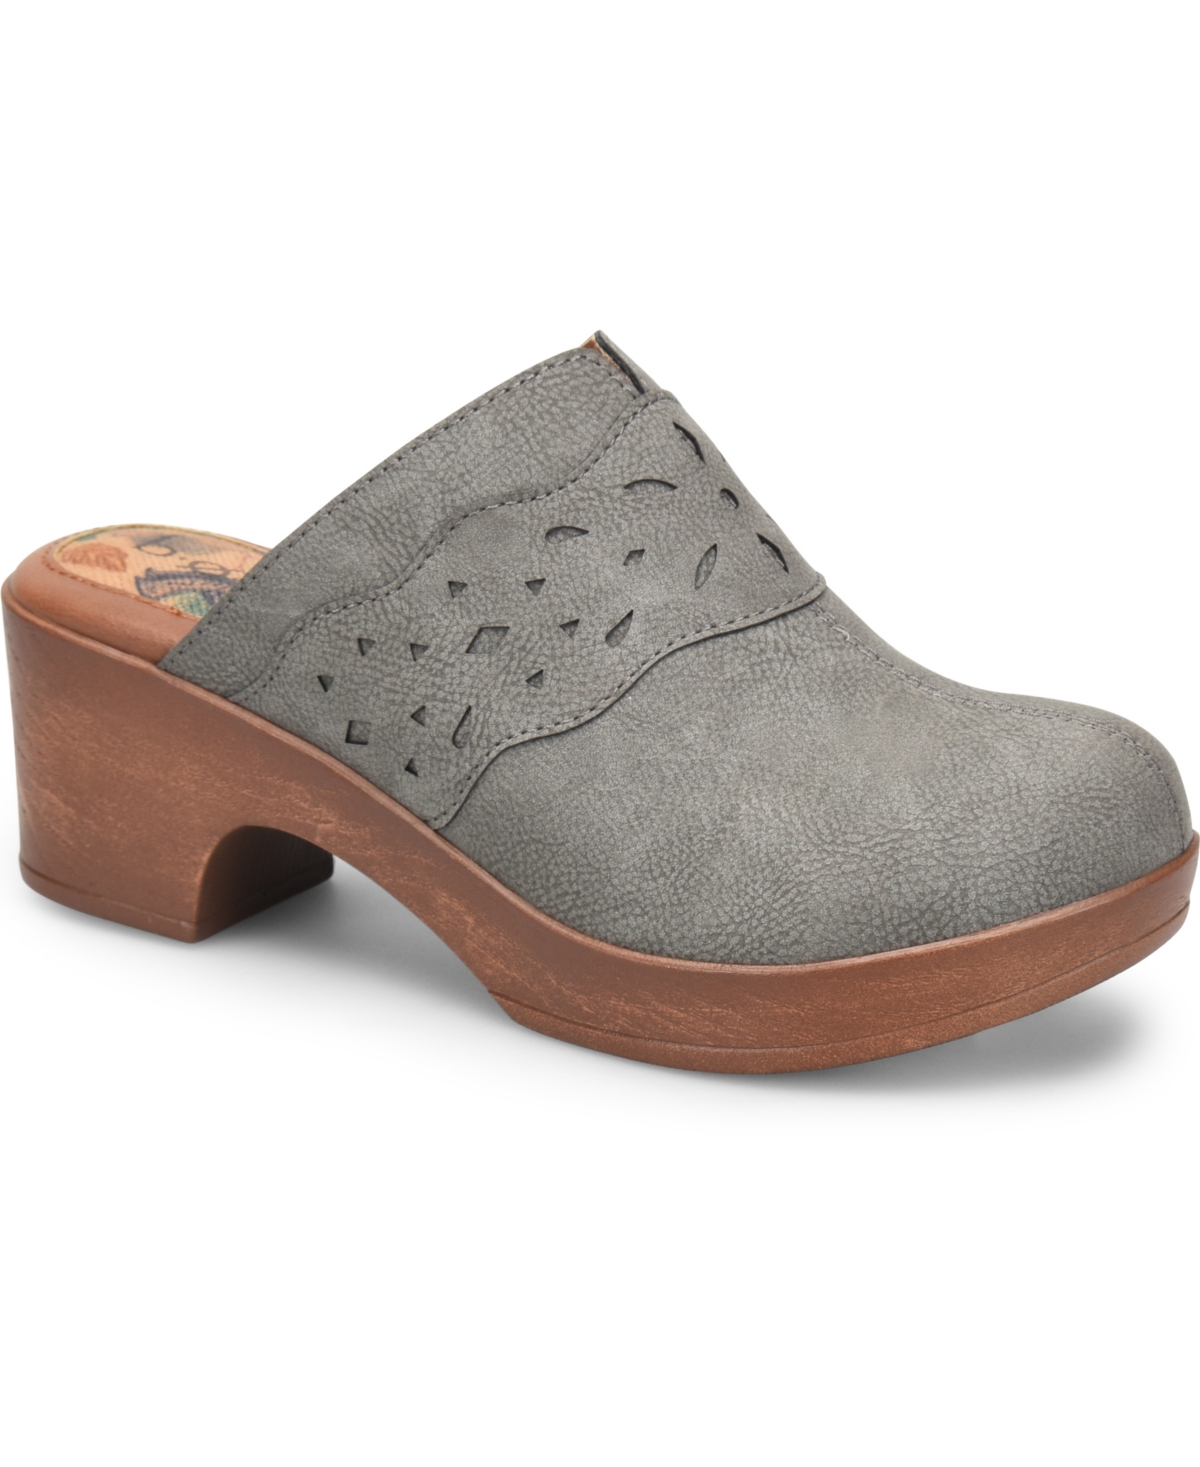 B.o.c. Women's Jinny Comfort Clog Sandal Women's Shoes In Light Gray